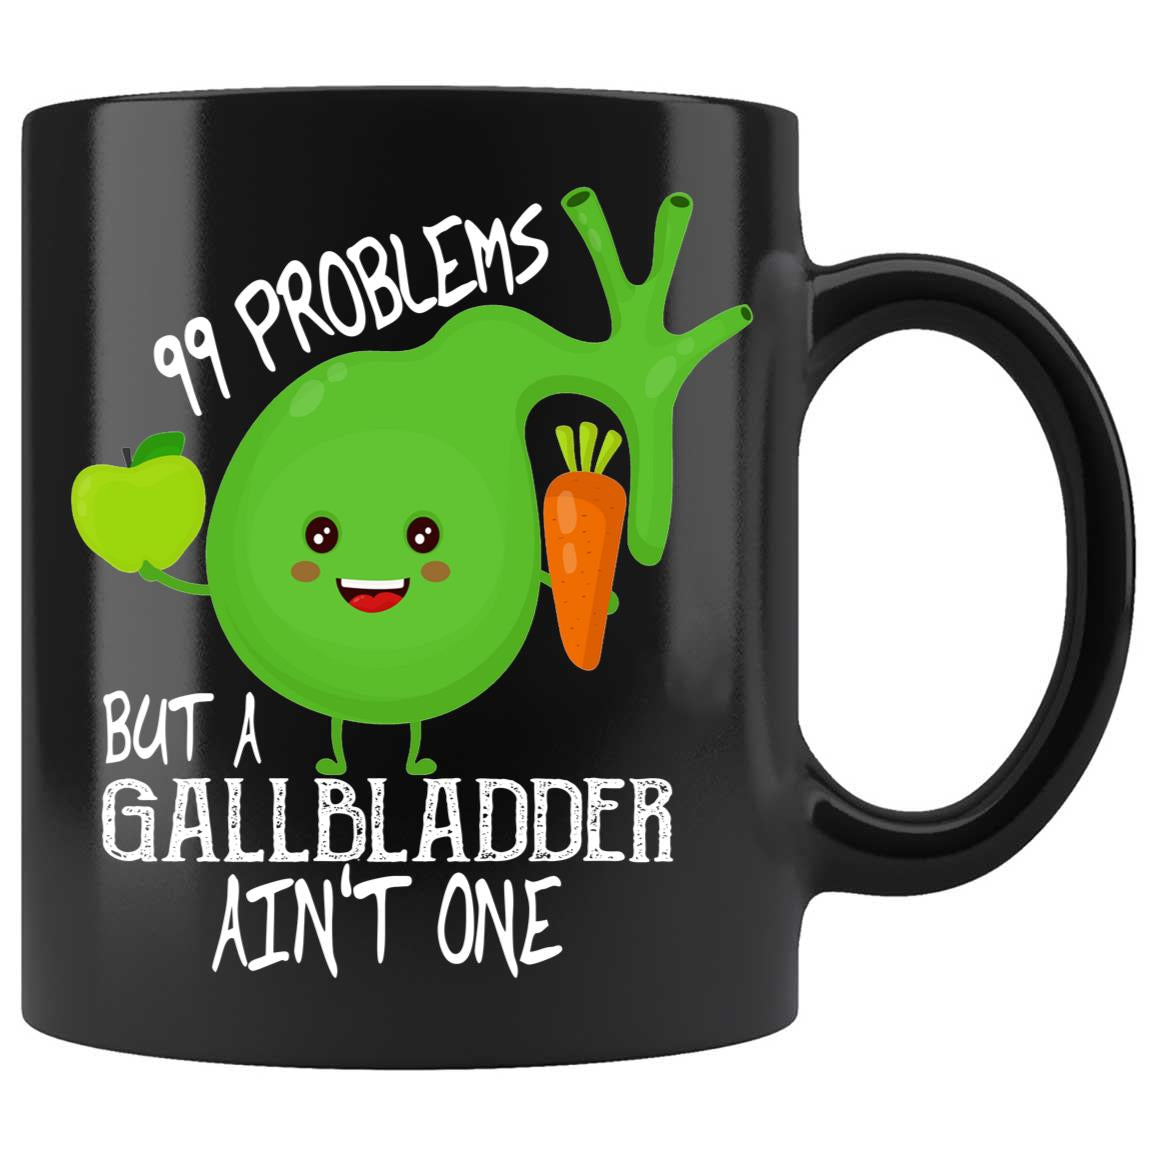 gallbladder joke